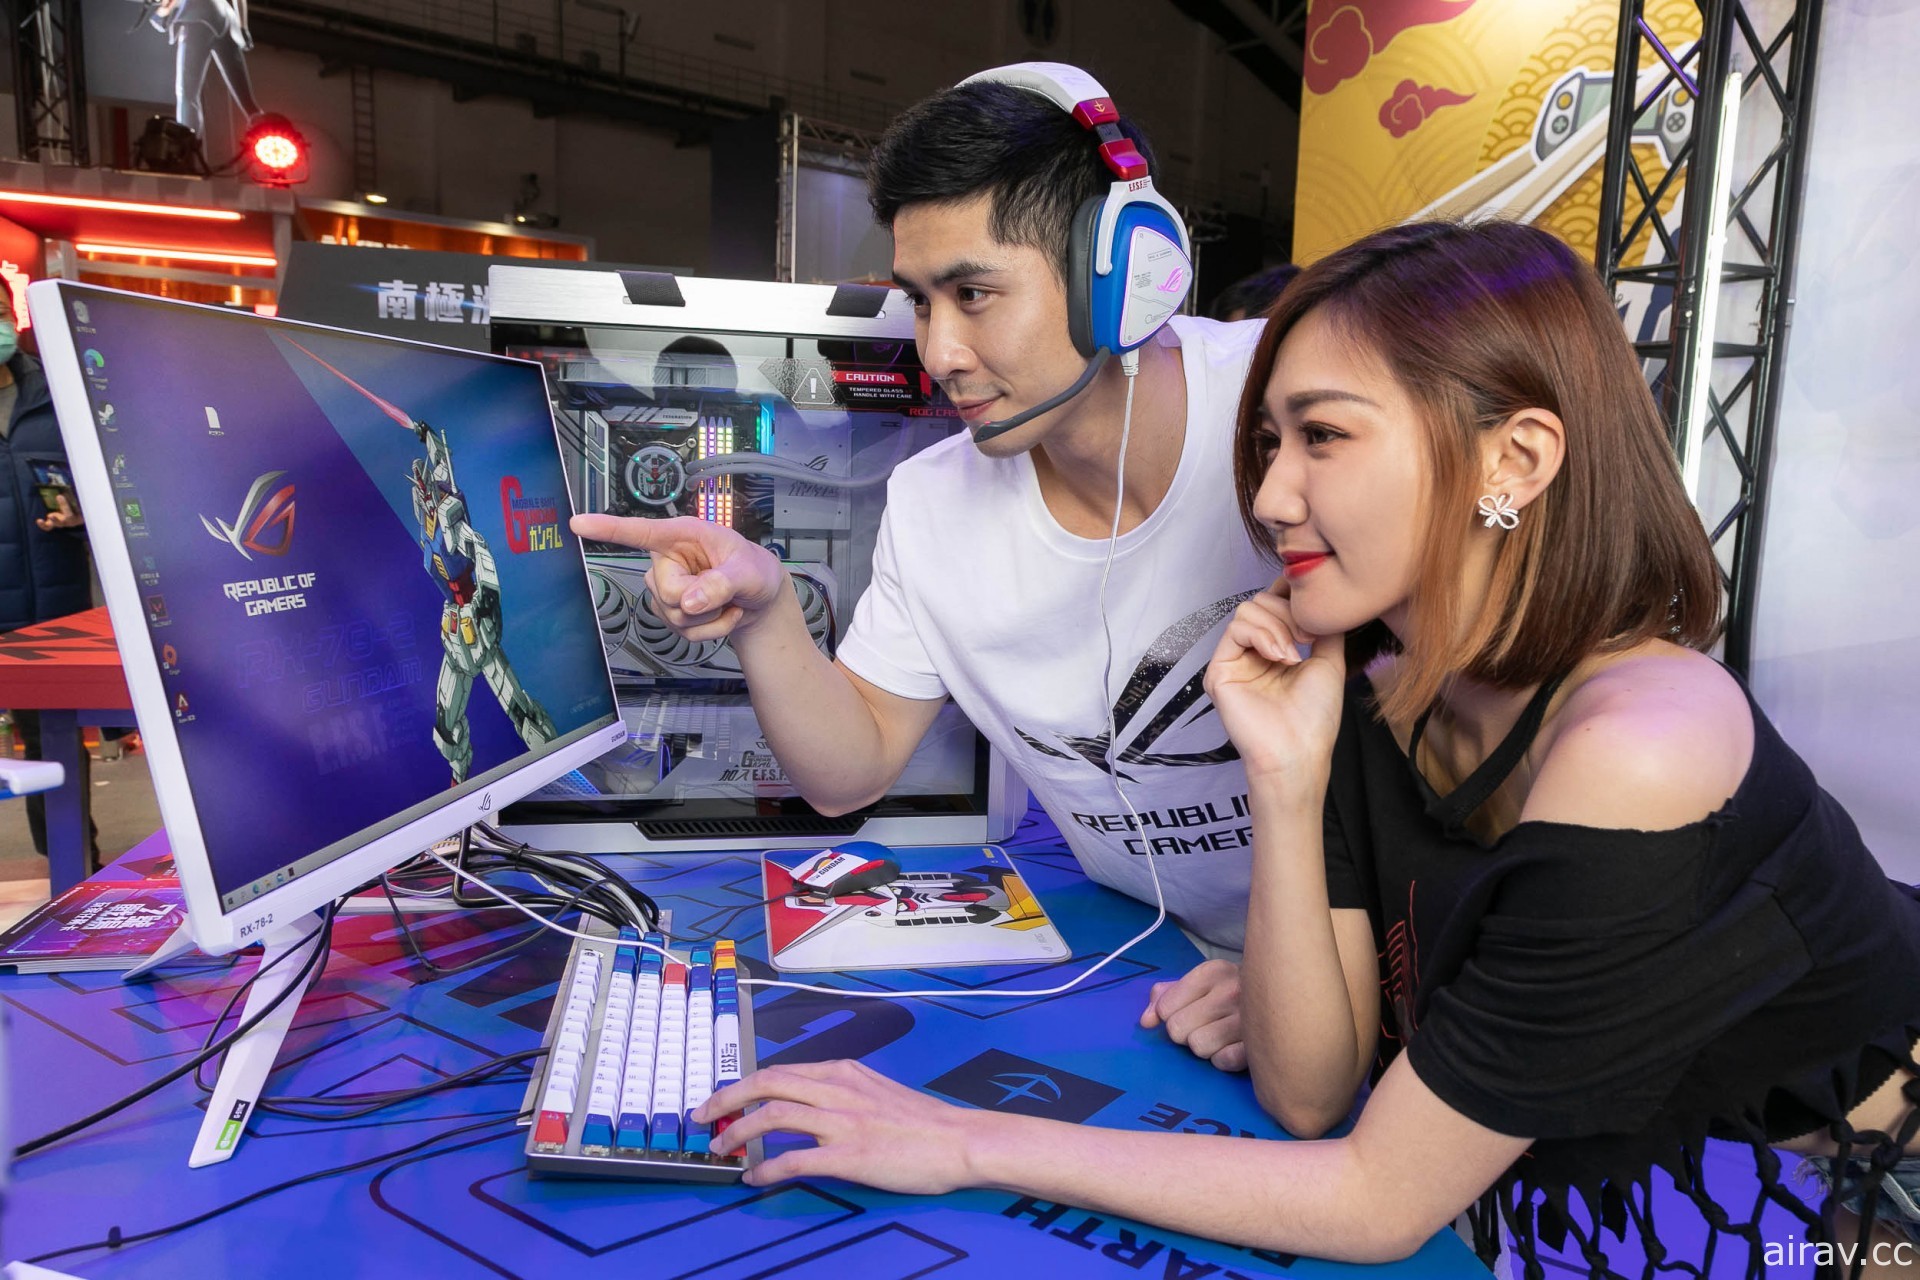 【TpGS 21】ROG 台北電玩展攤位打造鋼彈區 主題水冷改裝機與聯名新品現場亮相